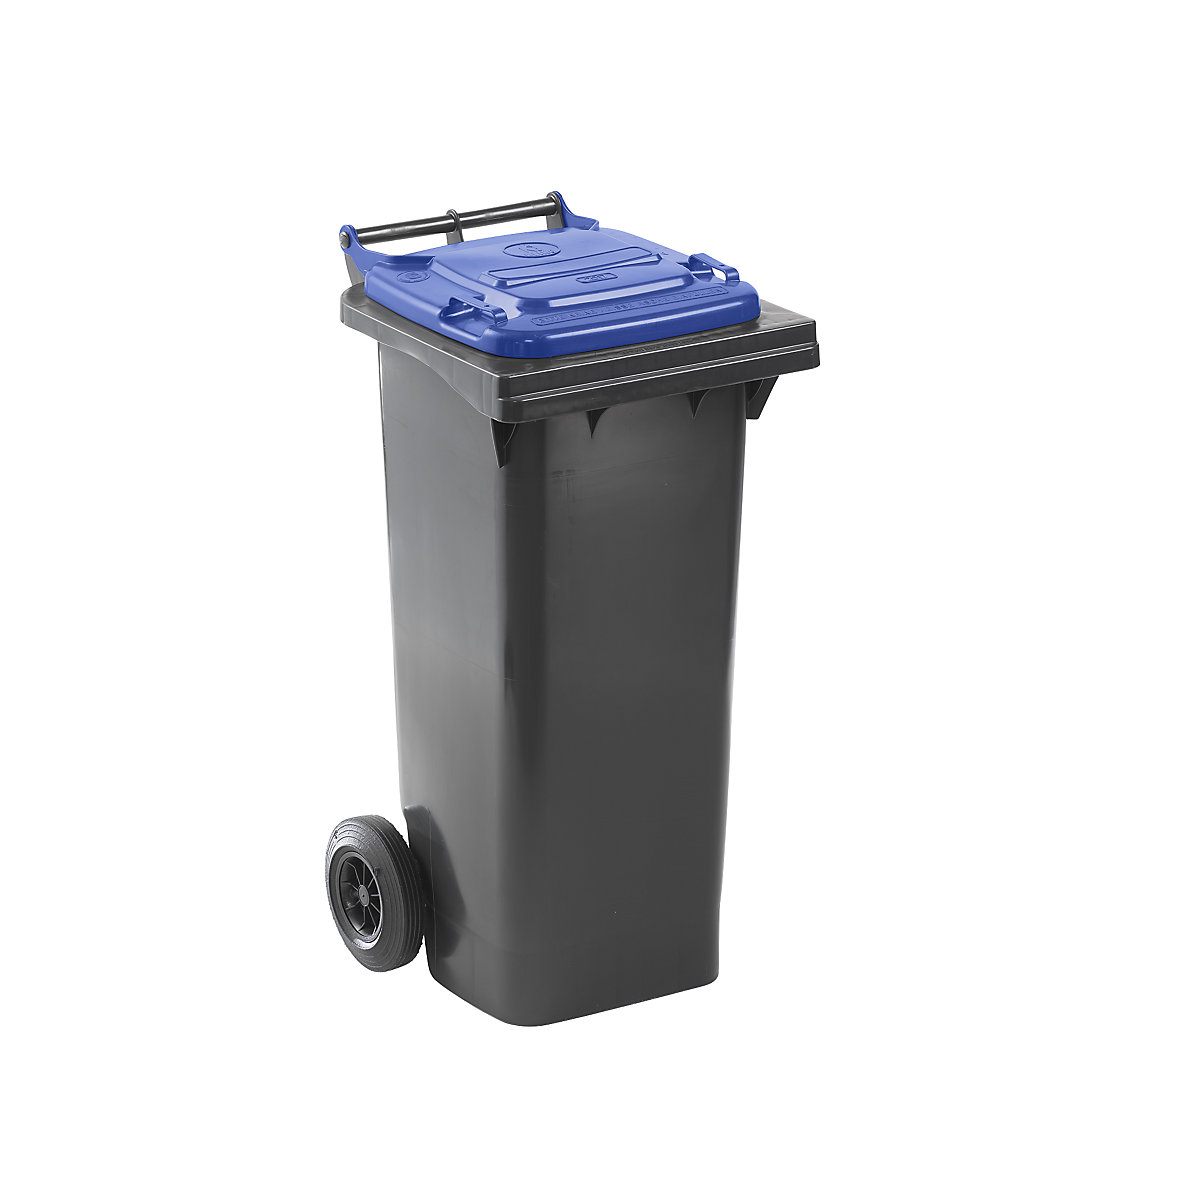 Waste bin to DIN EN 840